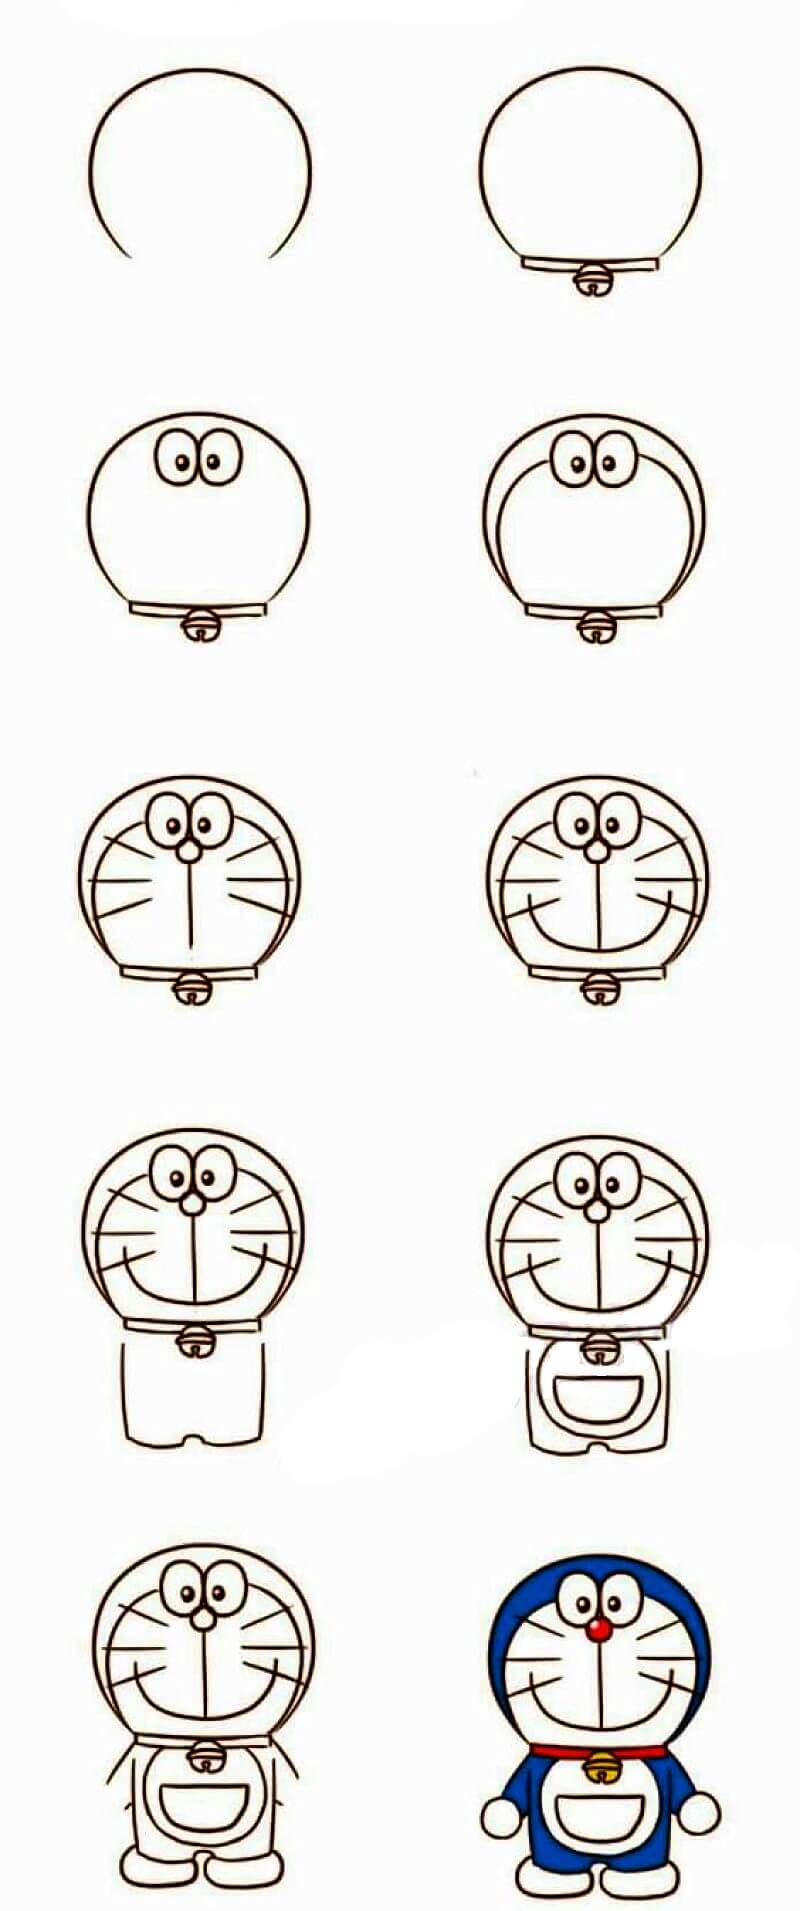 Comment dessiner Un Doraemon facile